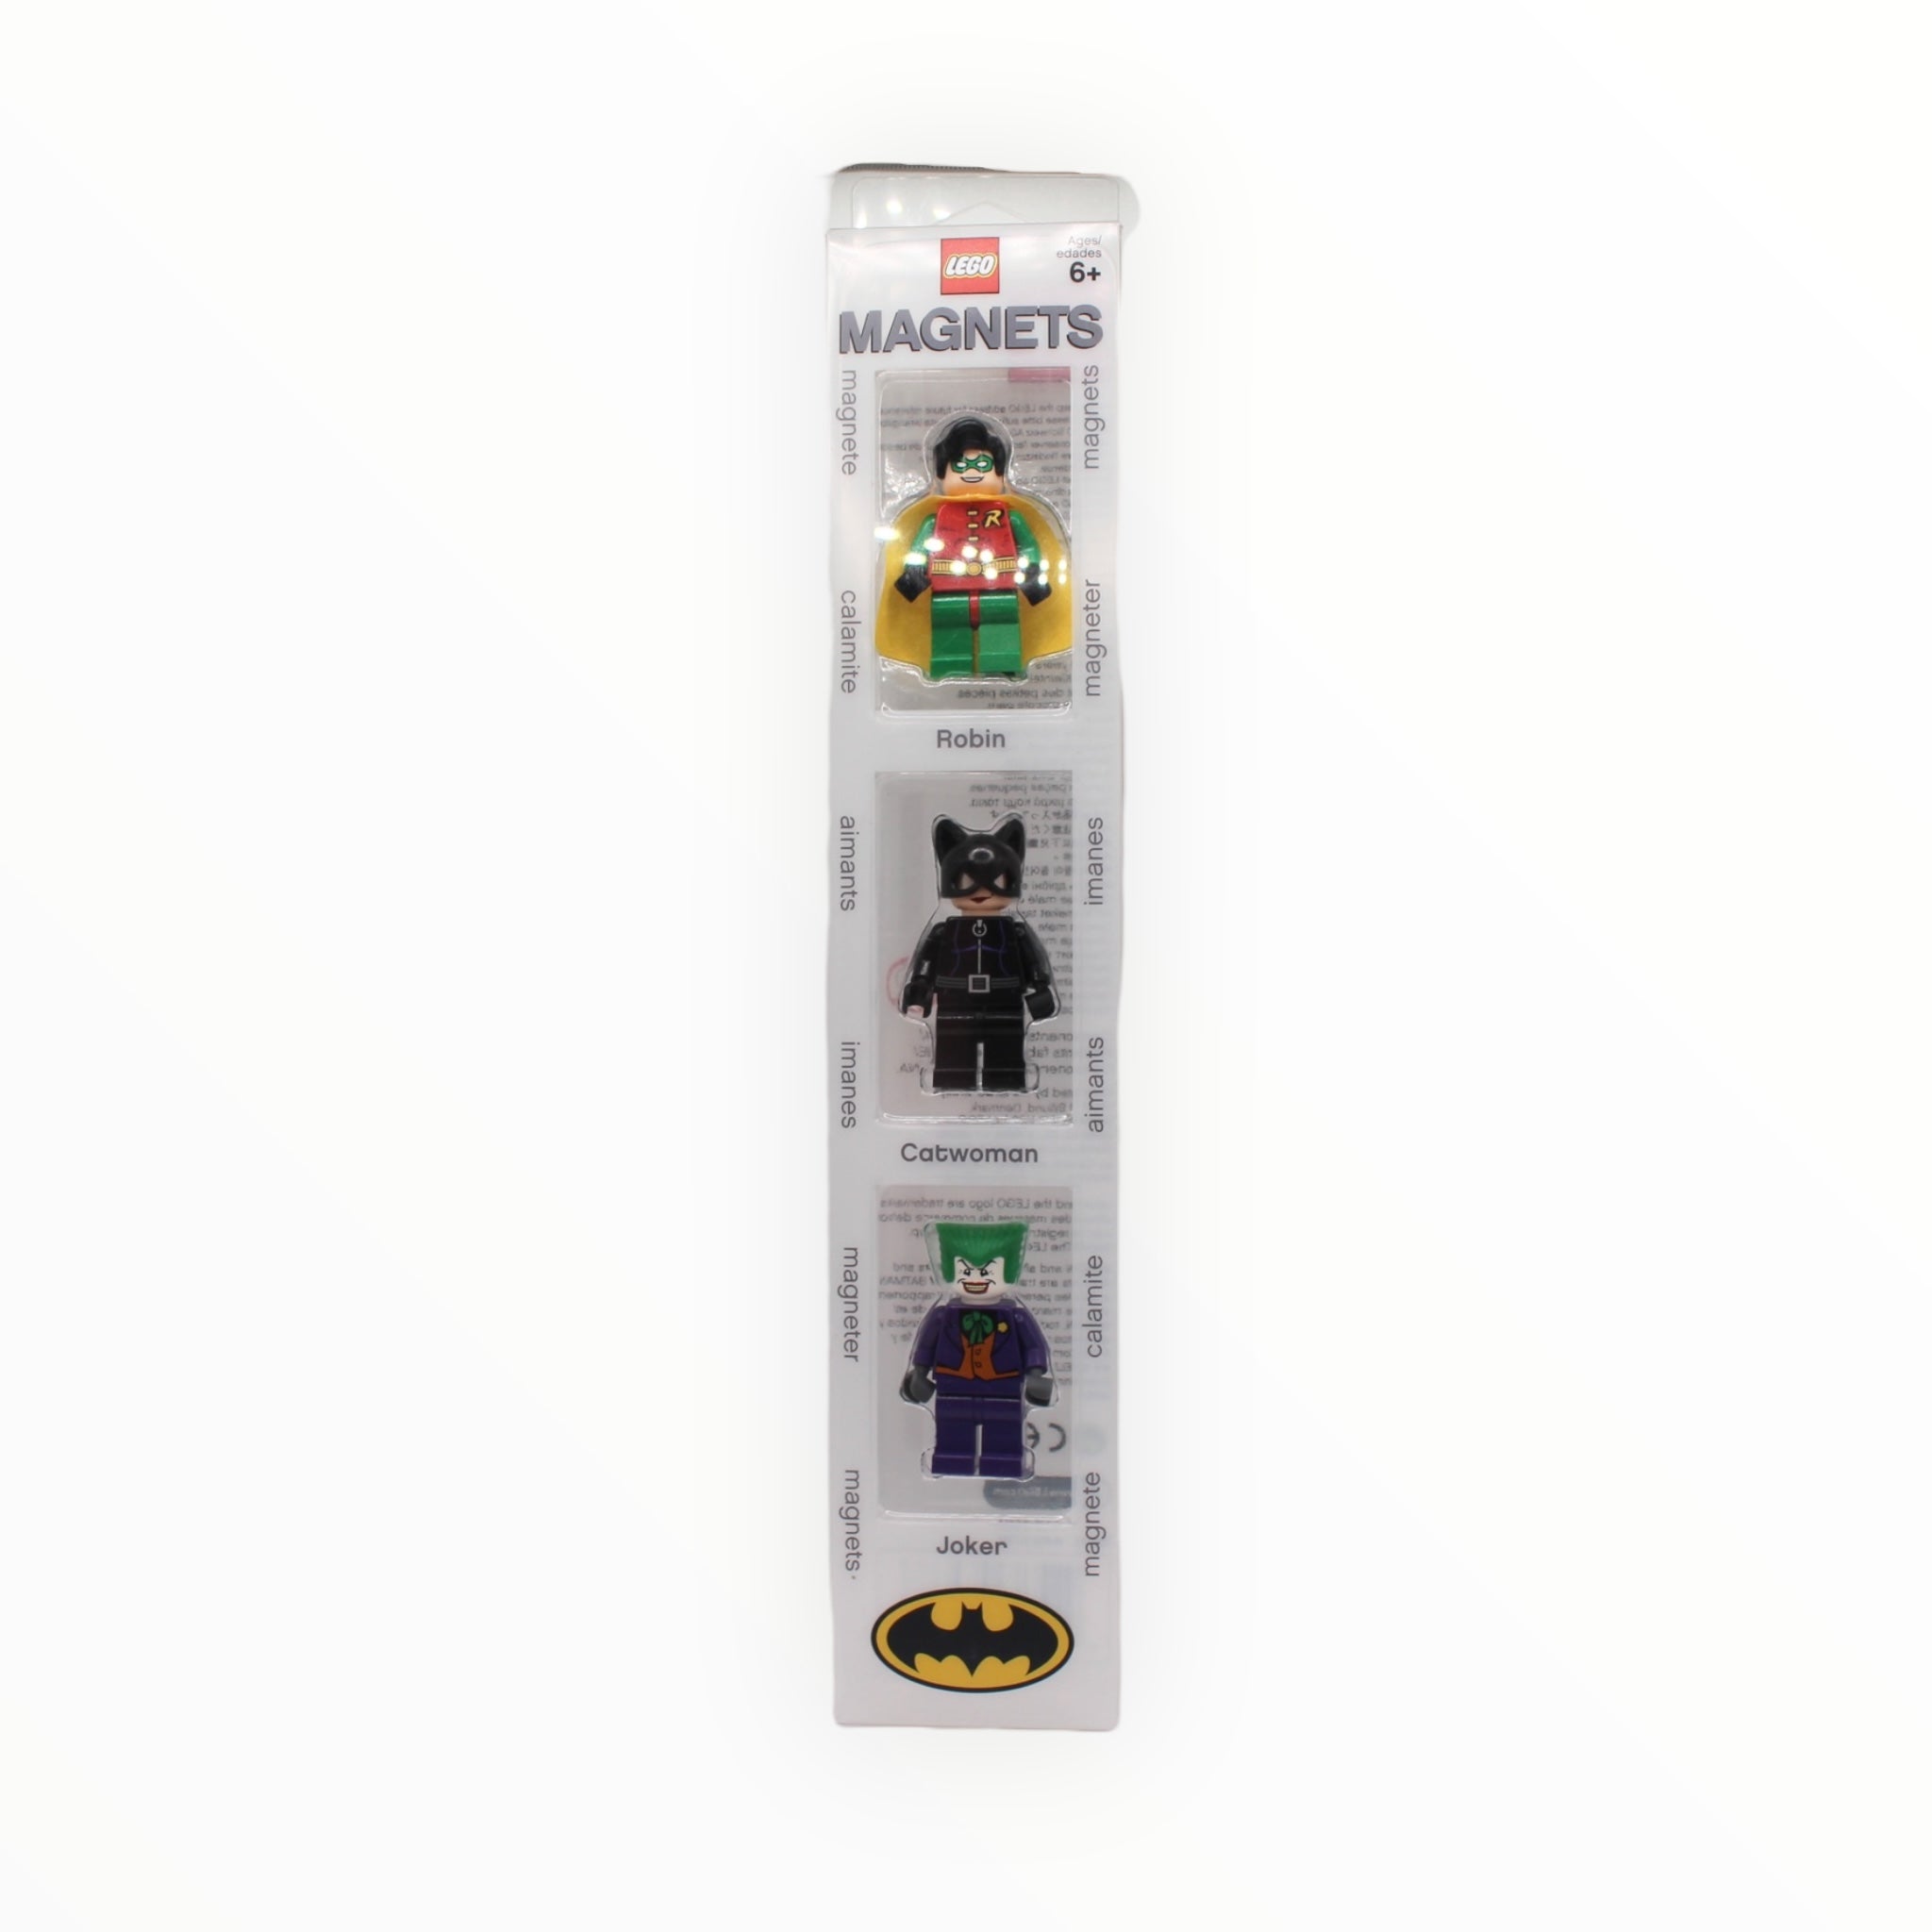 Retired Set 4493781 LEGO Batman Magnet Set - Robin, Catwoman, and Joker Blister Pack